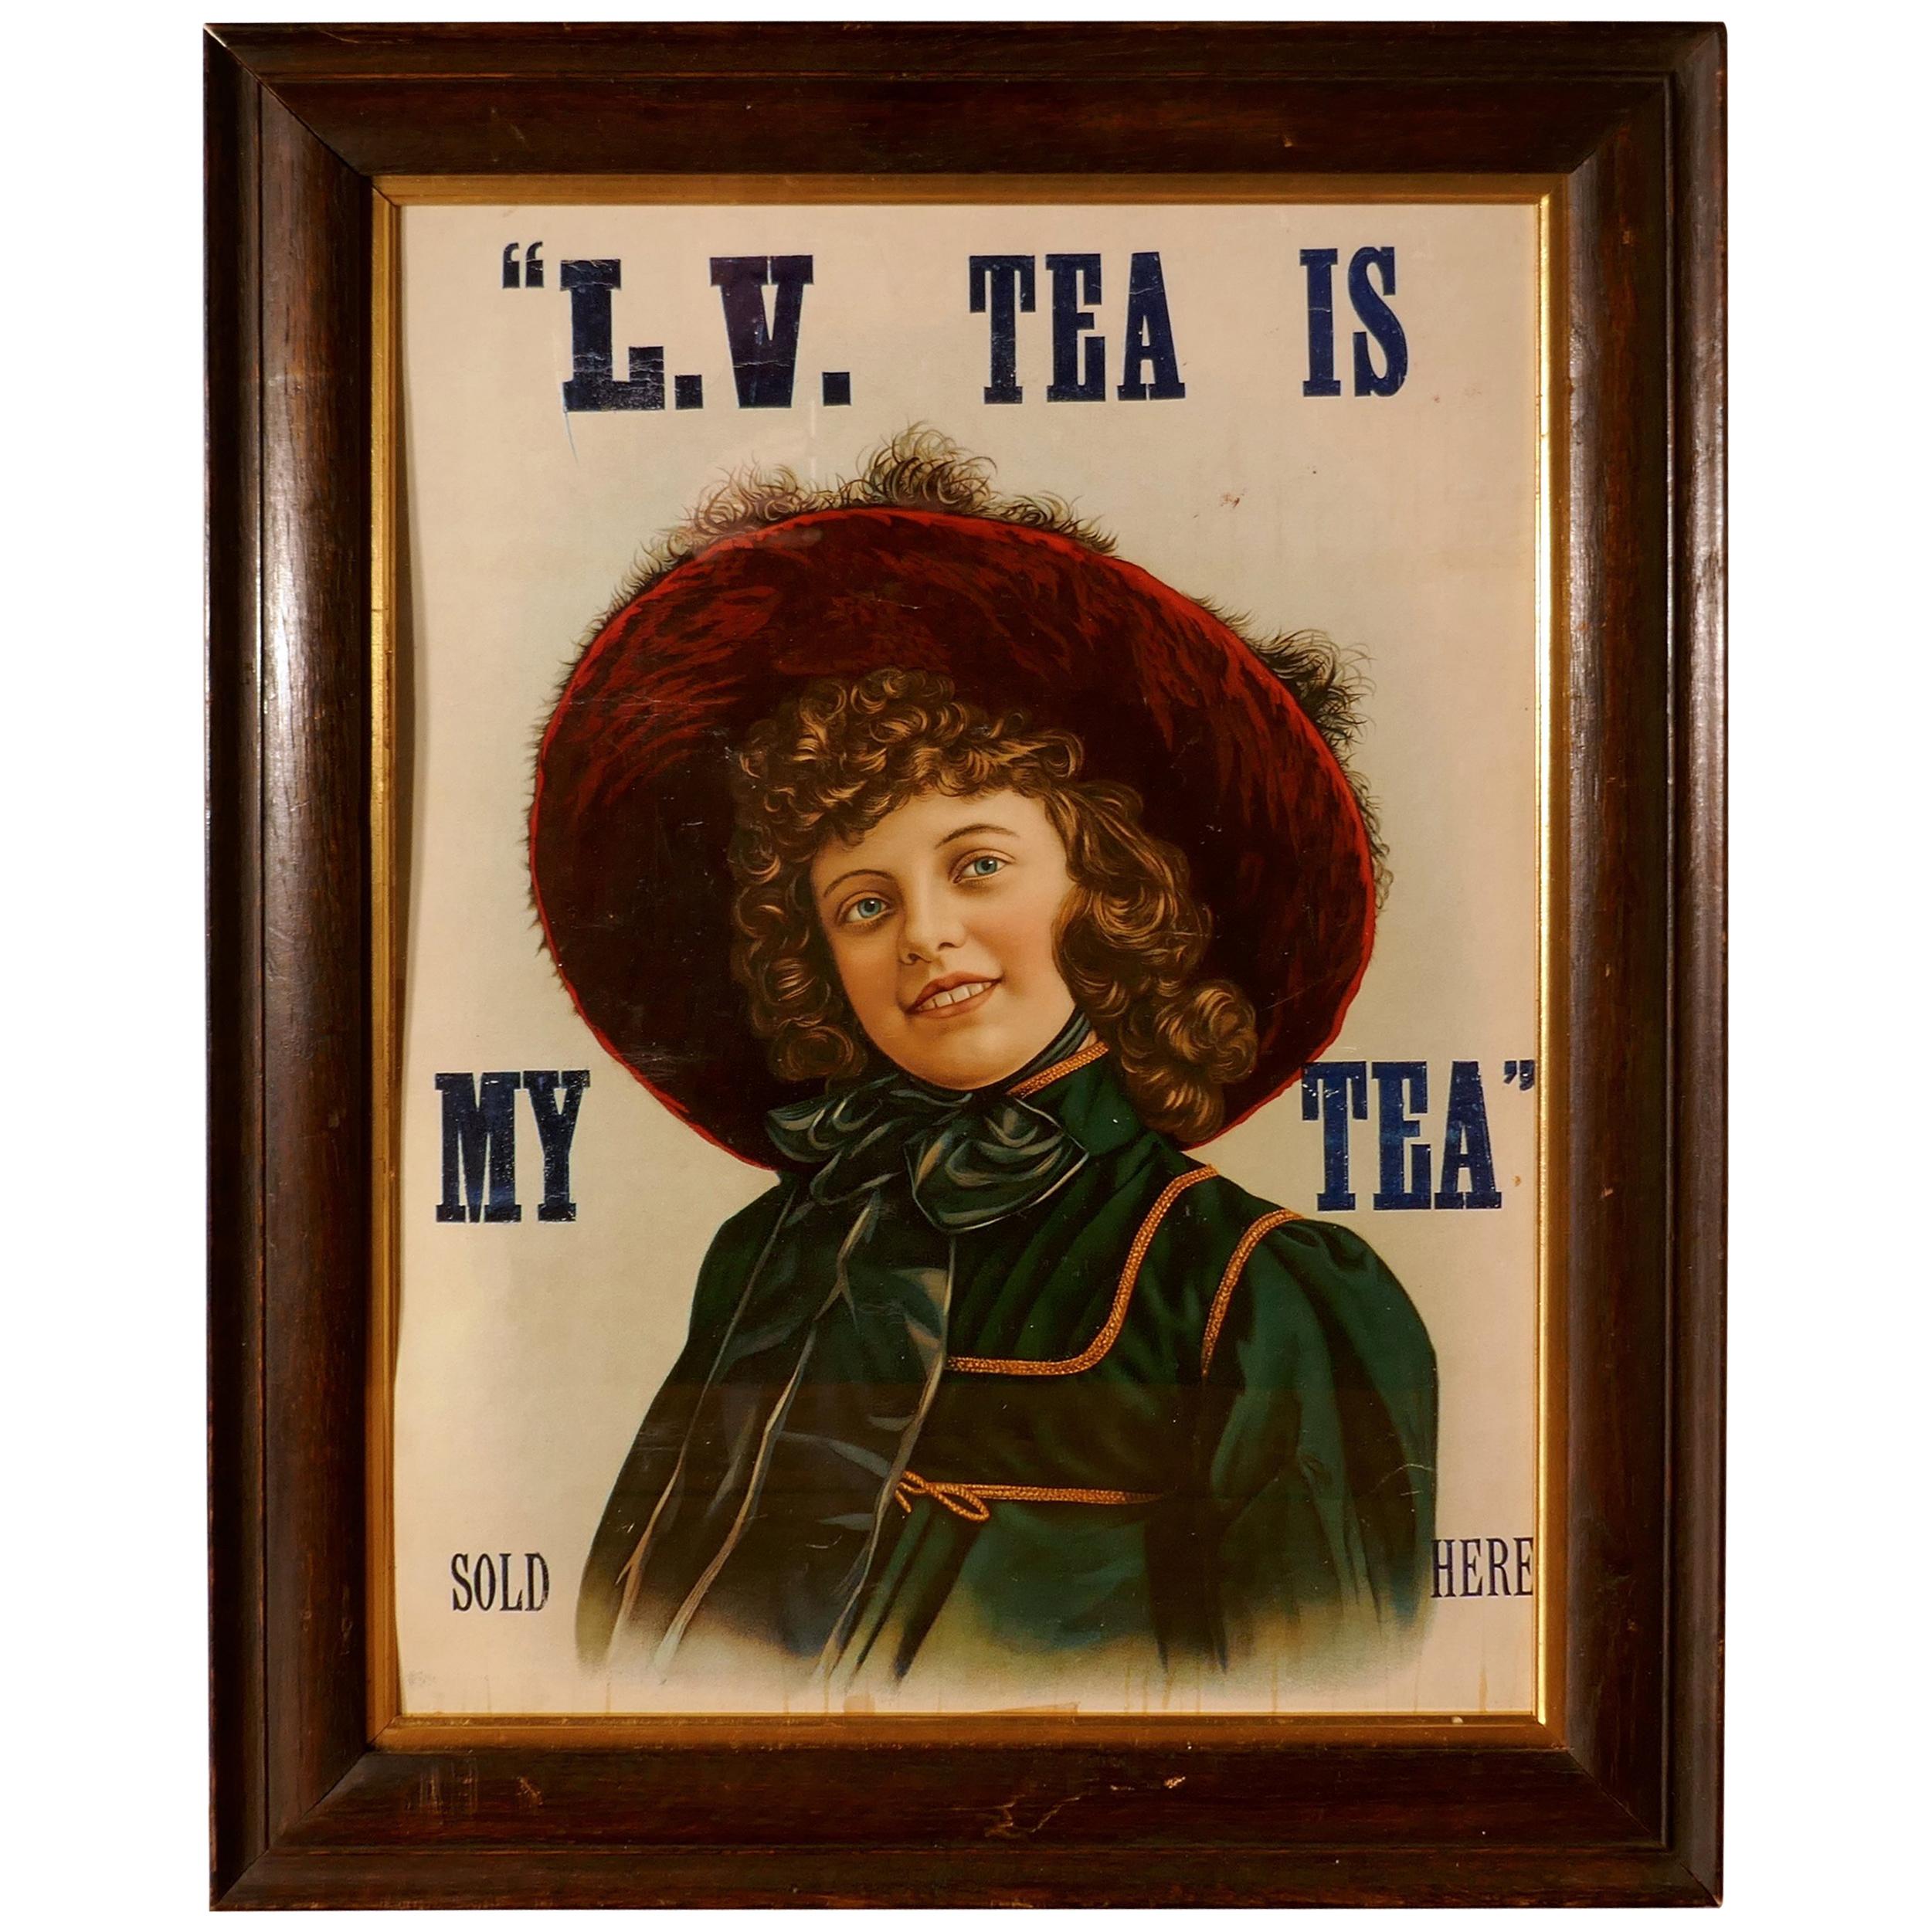 Original Edwardianisches gerahmtes Werbekartenplakat für Tee, L.V. TEA IS MY TEA, verkauft